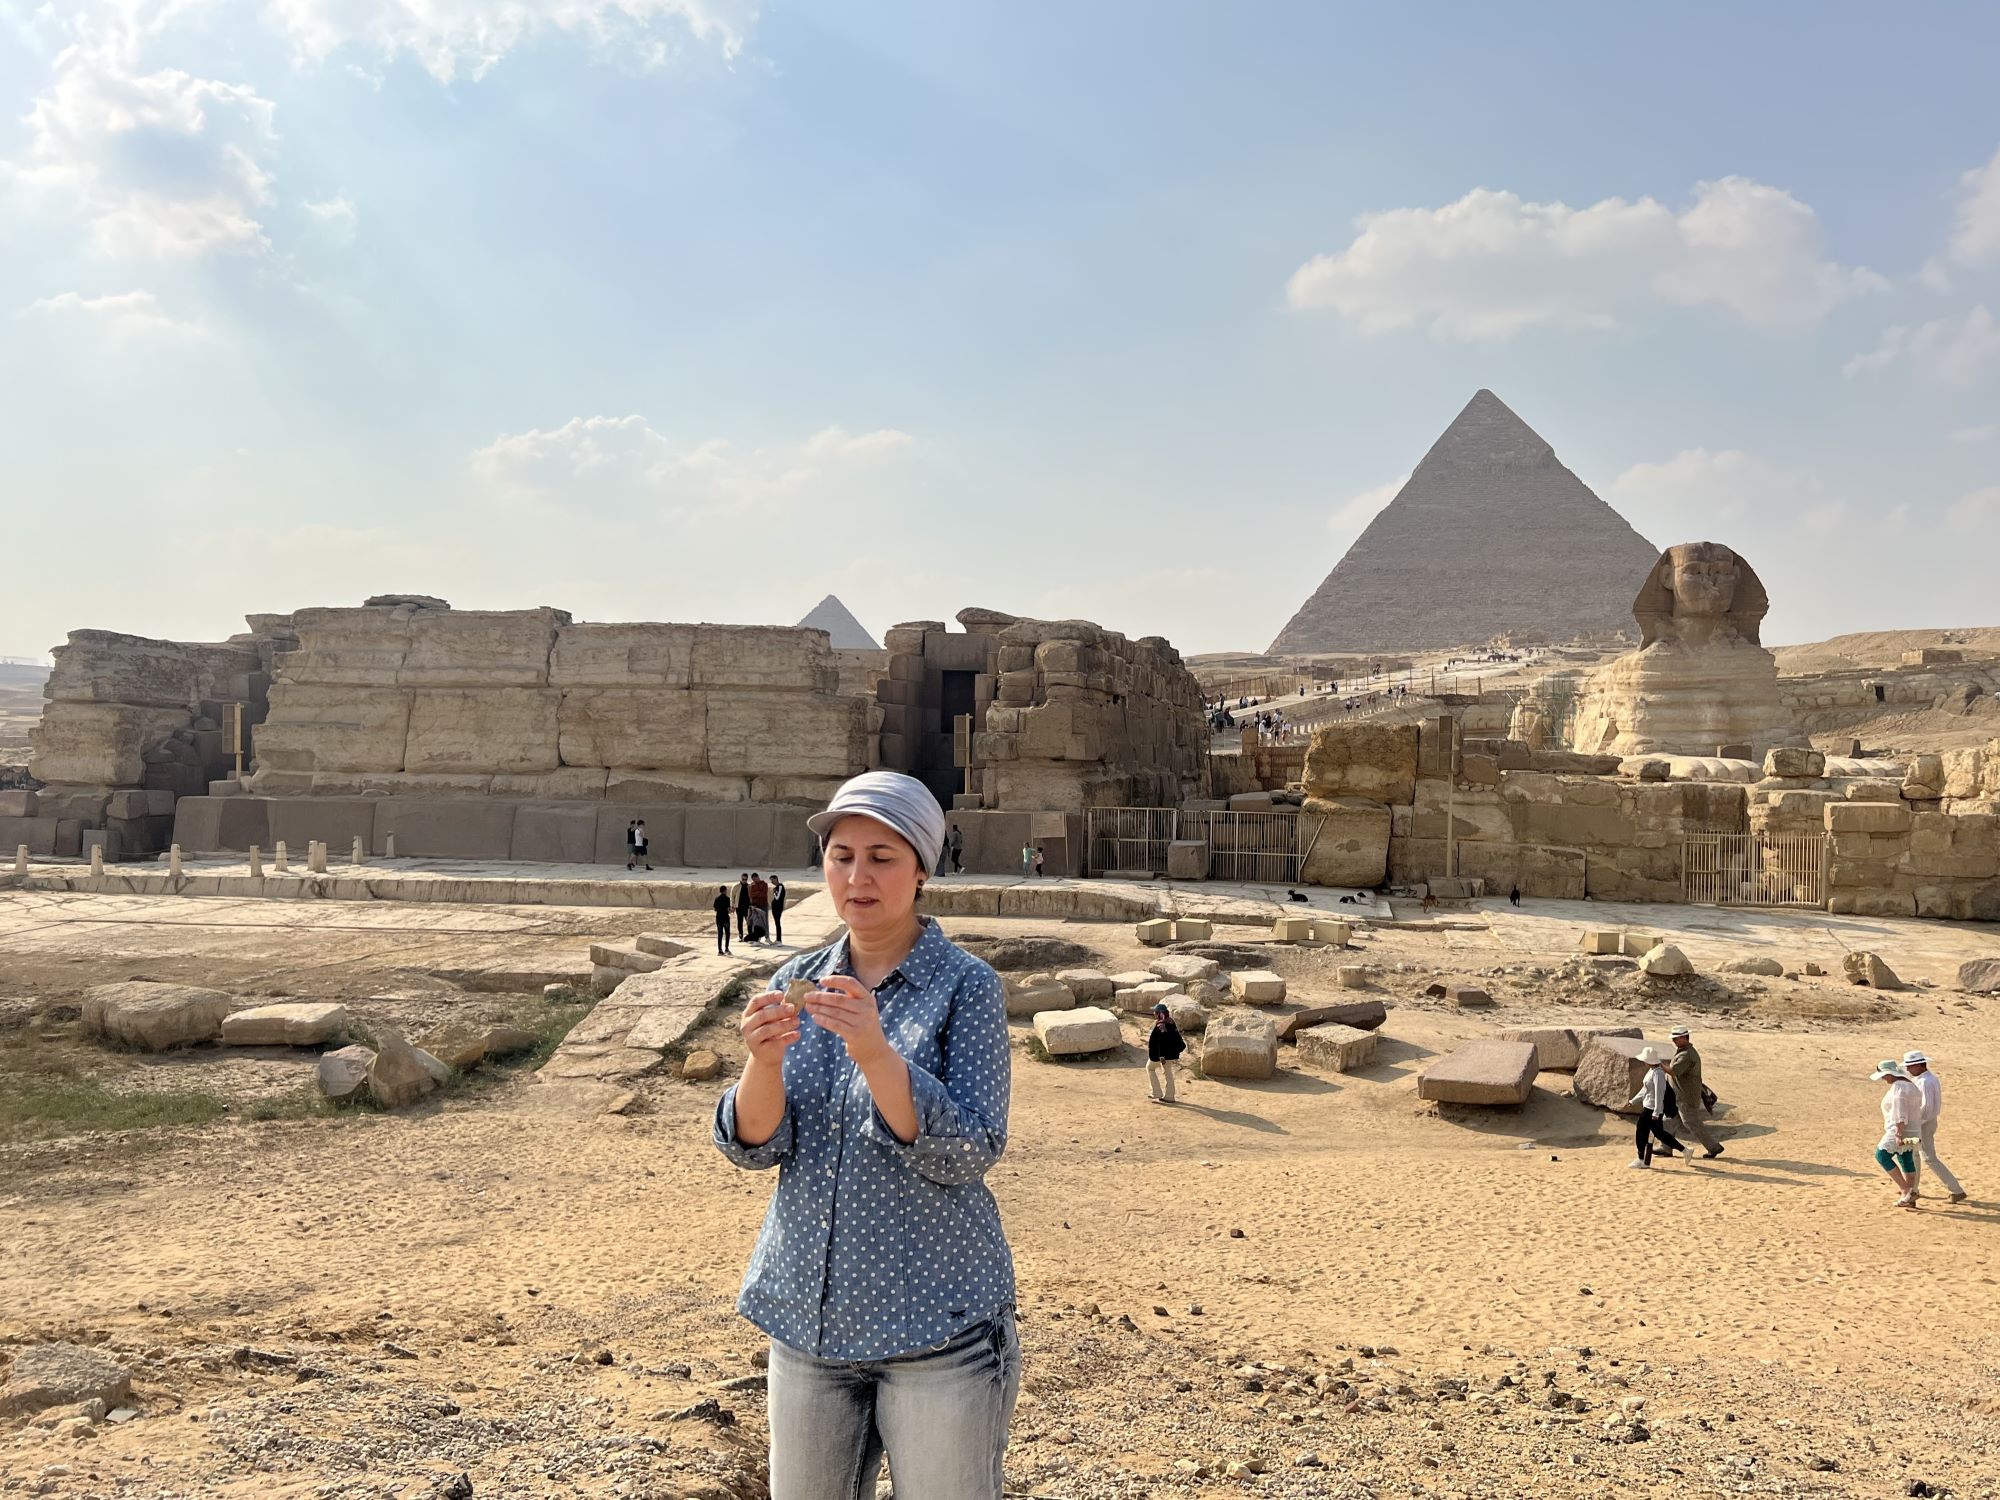 La chercheuse Eman Ghoneim examine un terrain où aurait autrefois coulé le Nil, près des pyramides et du Sphinx, à Gizeh, en Égypte. Droit Eman Ghoneim